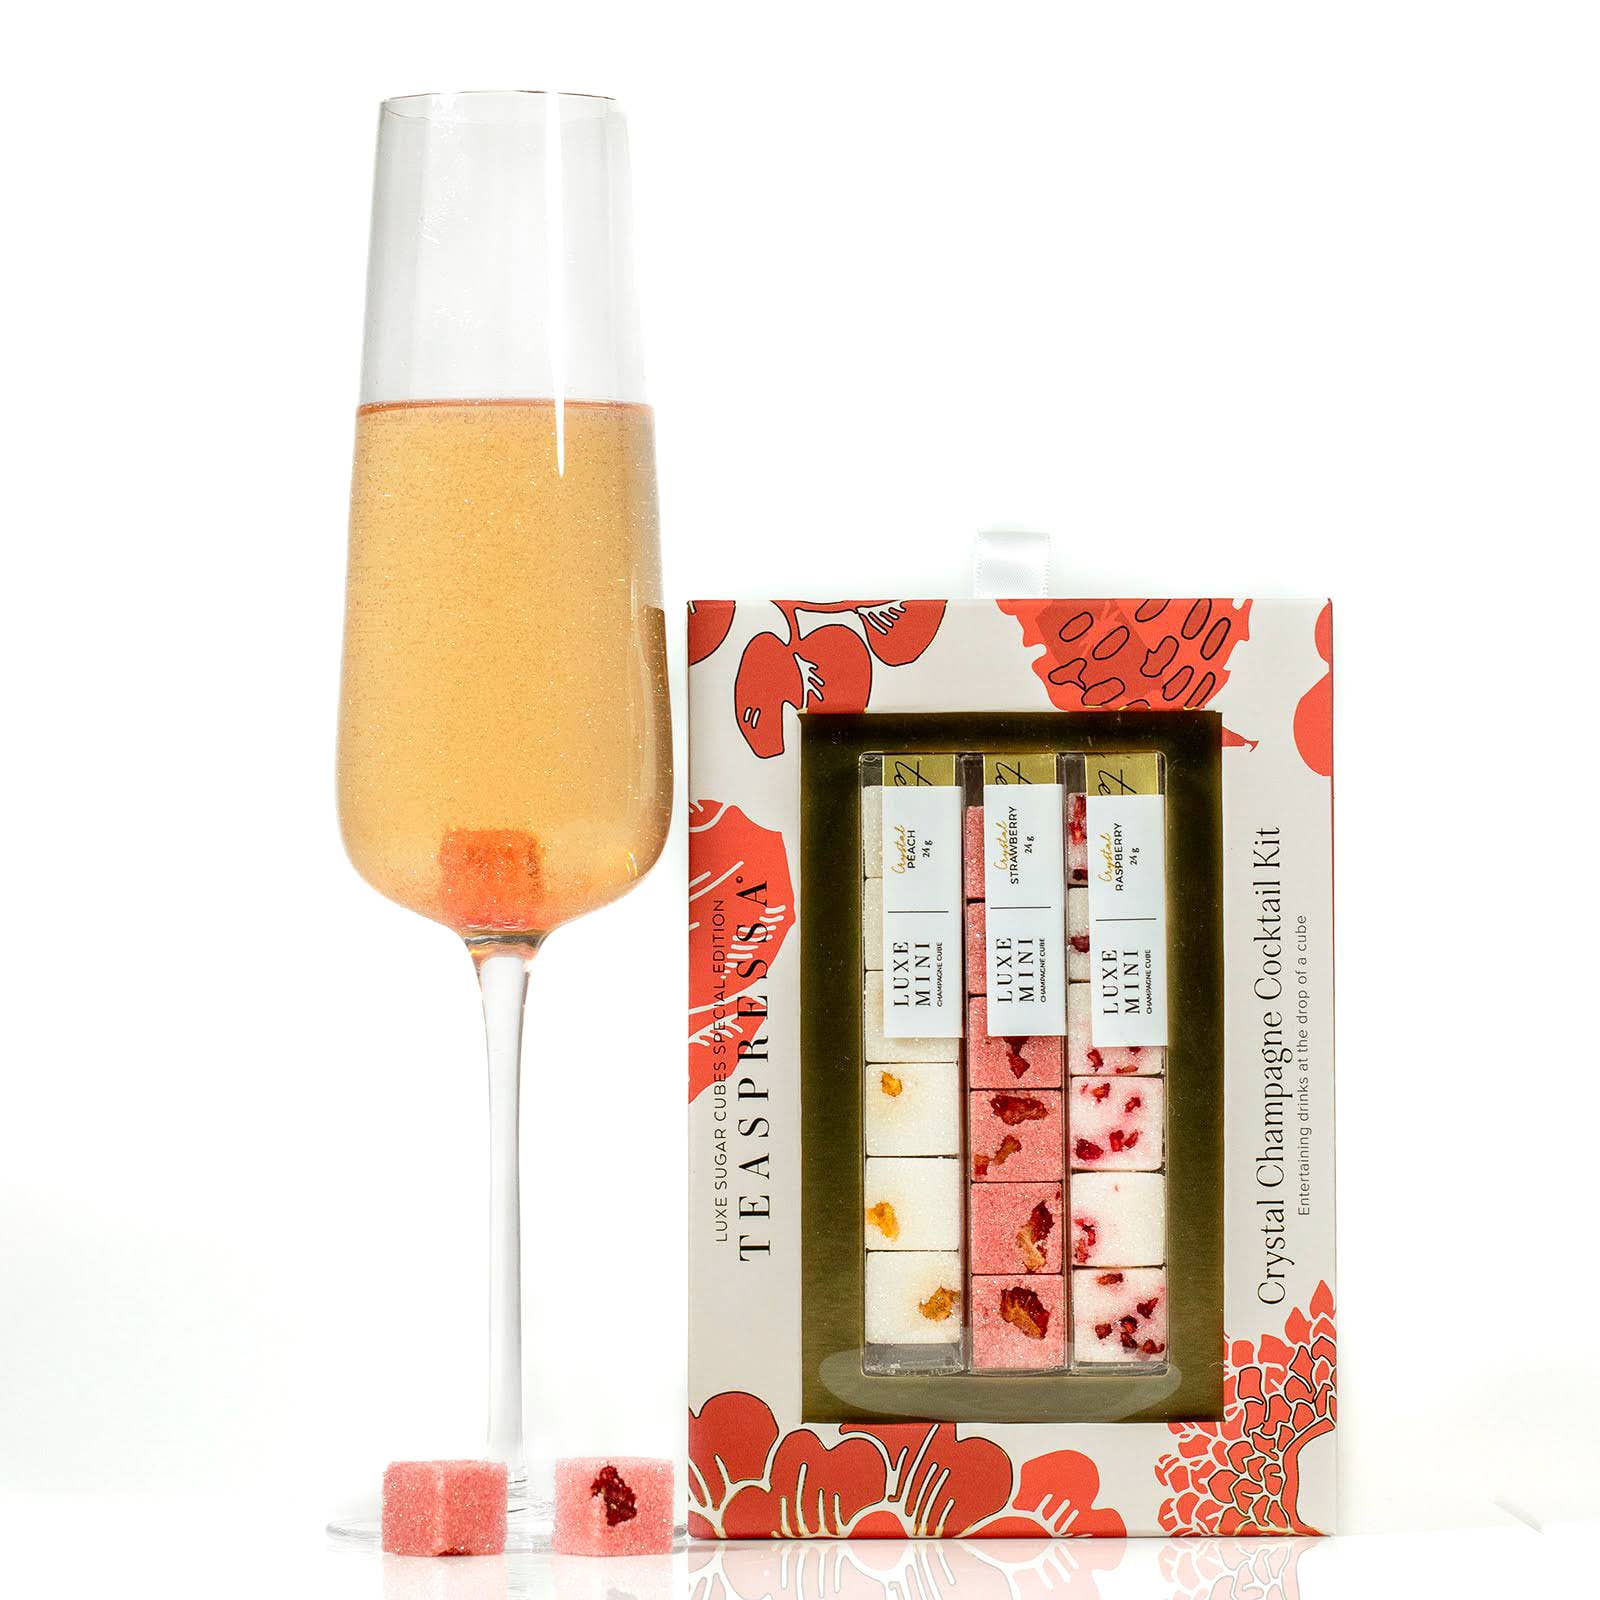 Teaspressa Instant Mimosa Cocktail Kit 